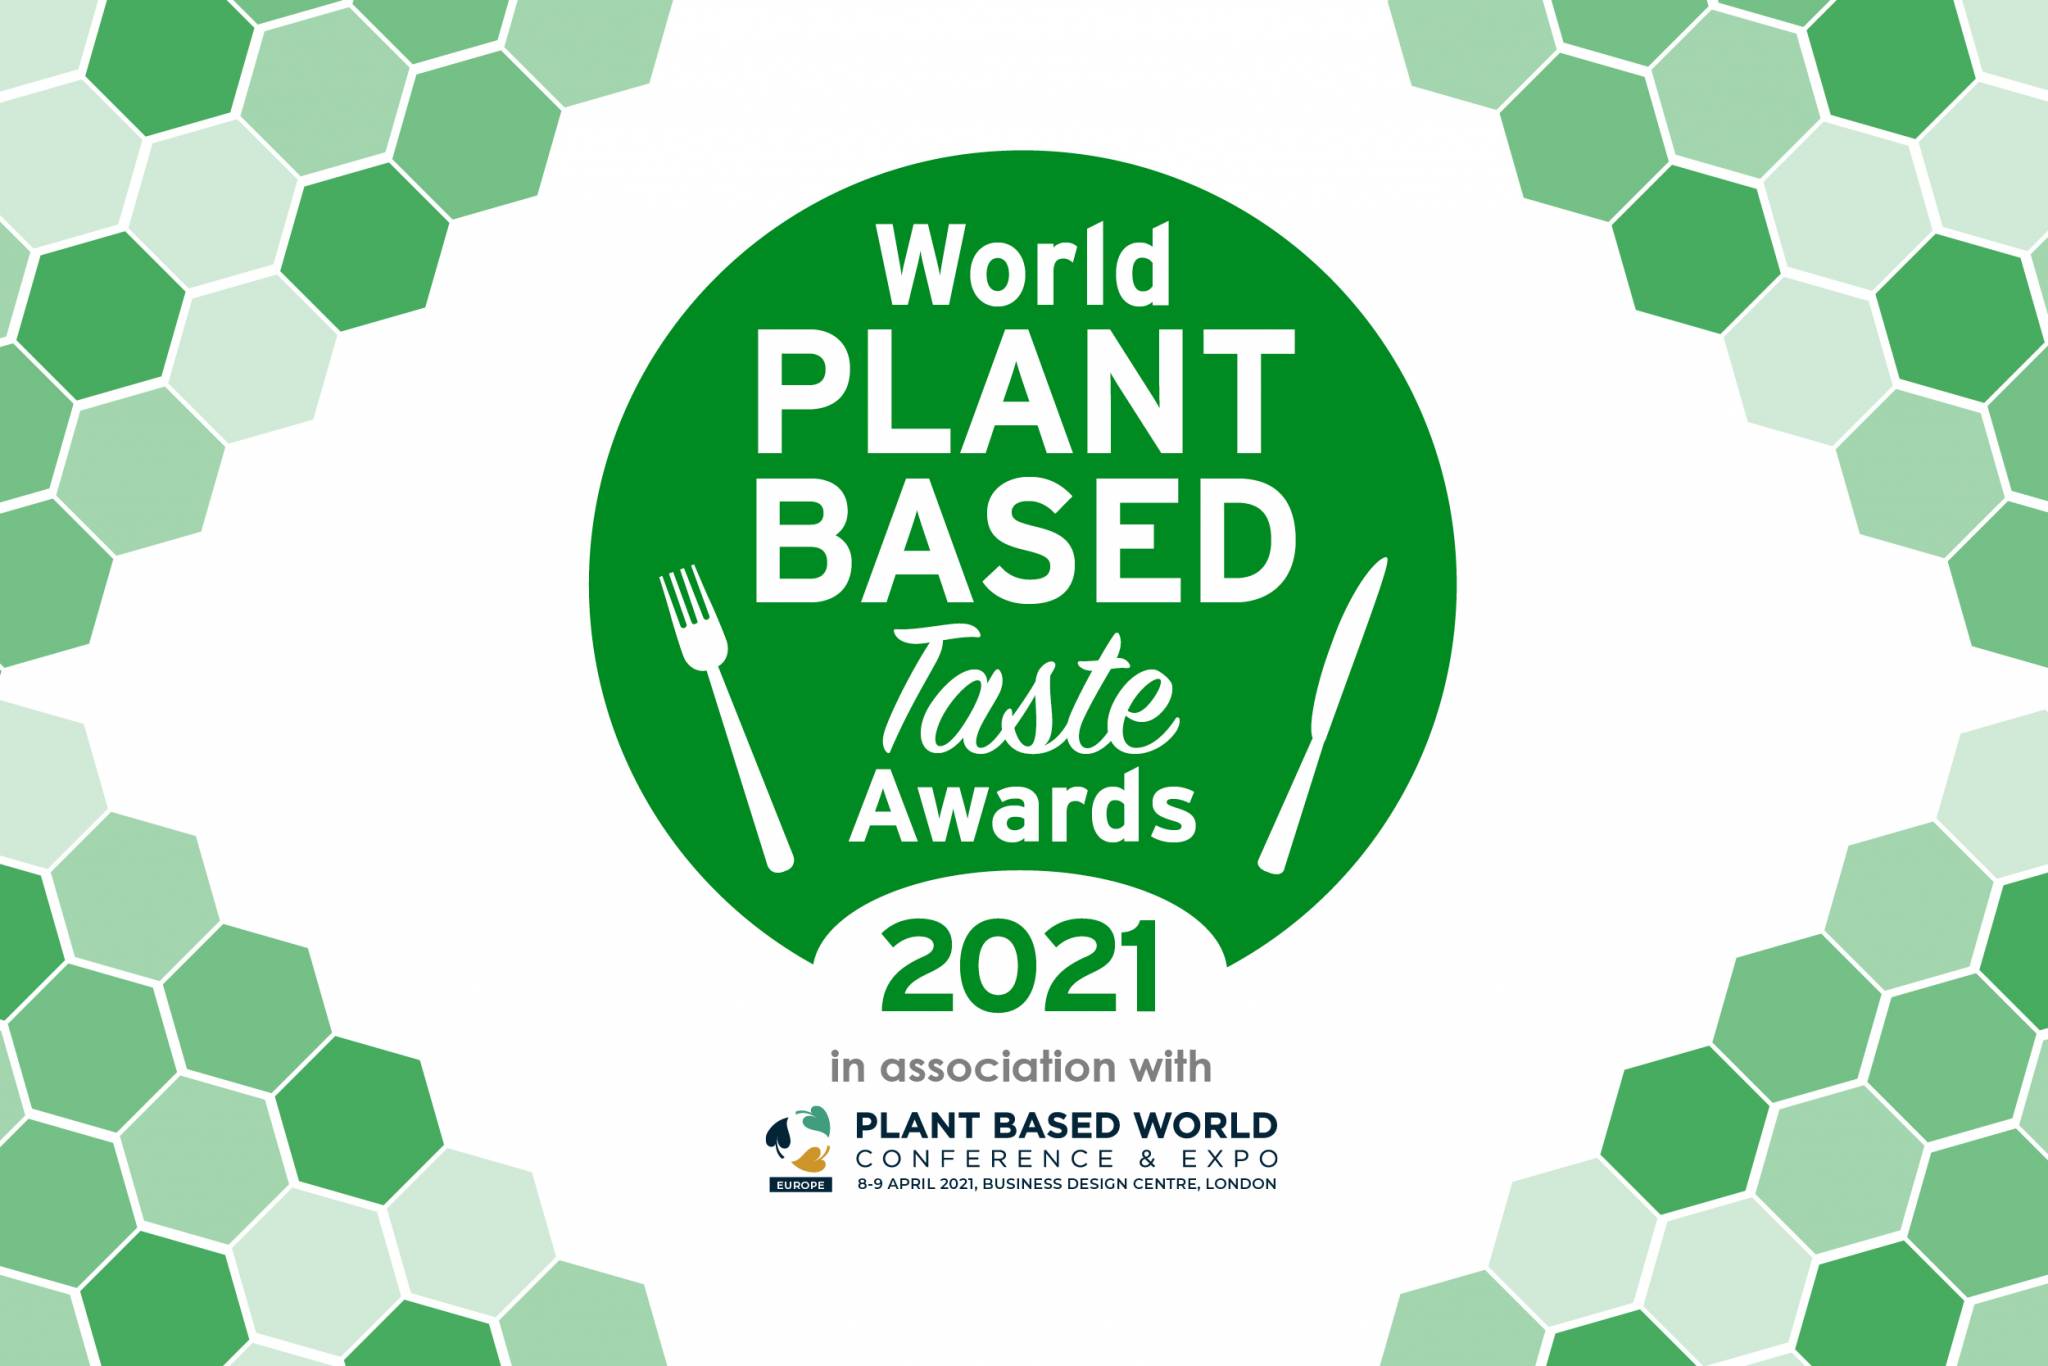 World Plant-Based Taste Awards 2021 postponed to June 2021